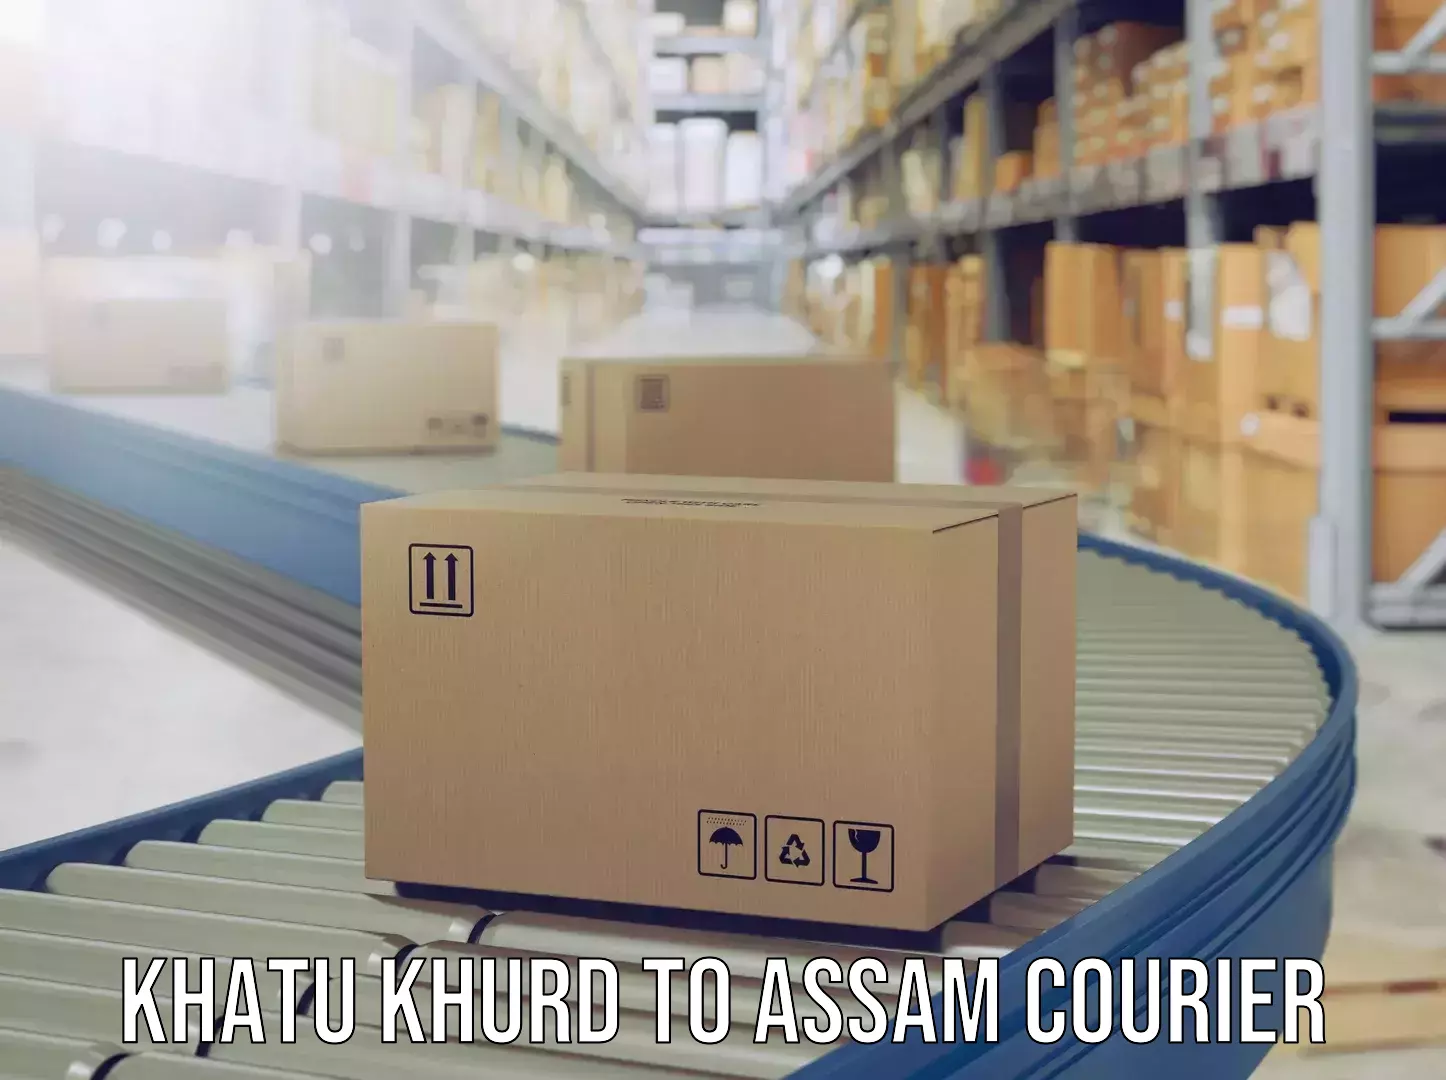 Luggage shipment specialists Khatu Khurd to Dokmoka